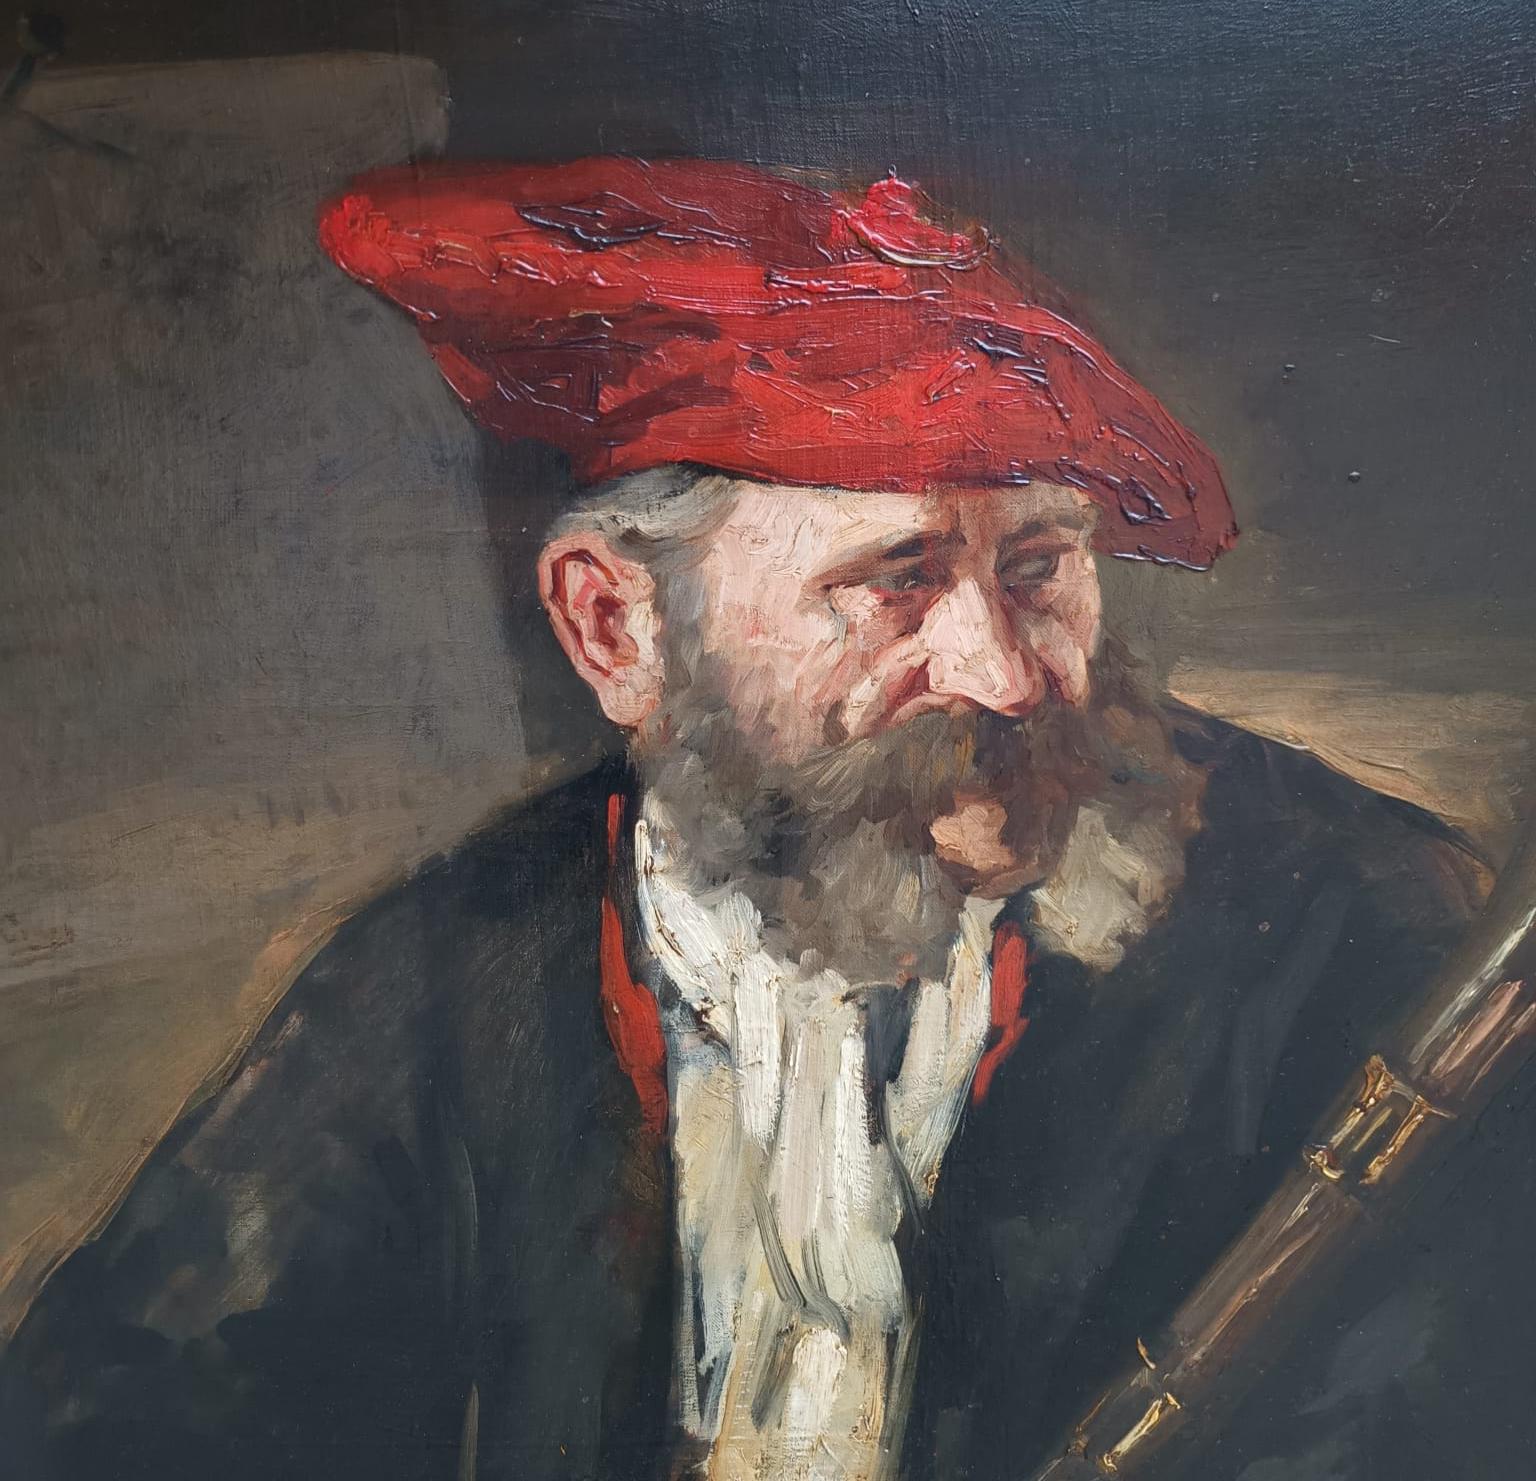 R.H. Craig
(actif principalement dans les années 1880 au Royaume-Uni)
Portrait d'un chasseur, 1920 ca.
huile sur toile cm. 85x66
dans le cadre pour cm. 92x74
Signé en bas à gauche
Signé en haut à gauche

Peinture en excellent état représentant un